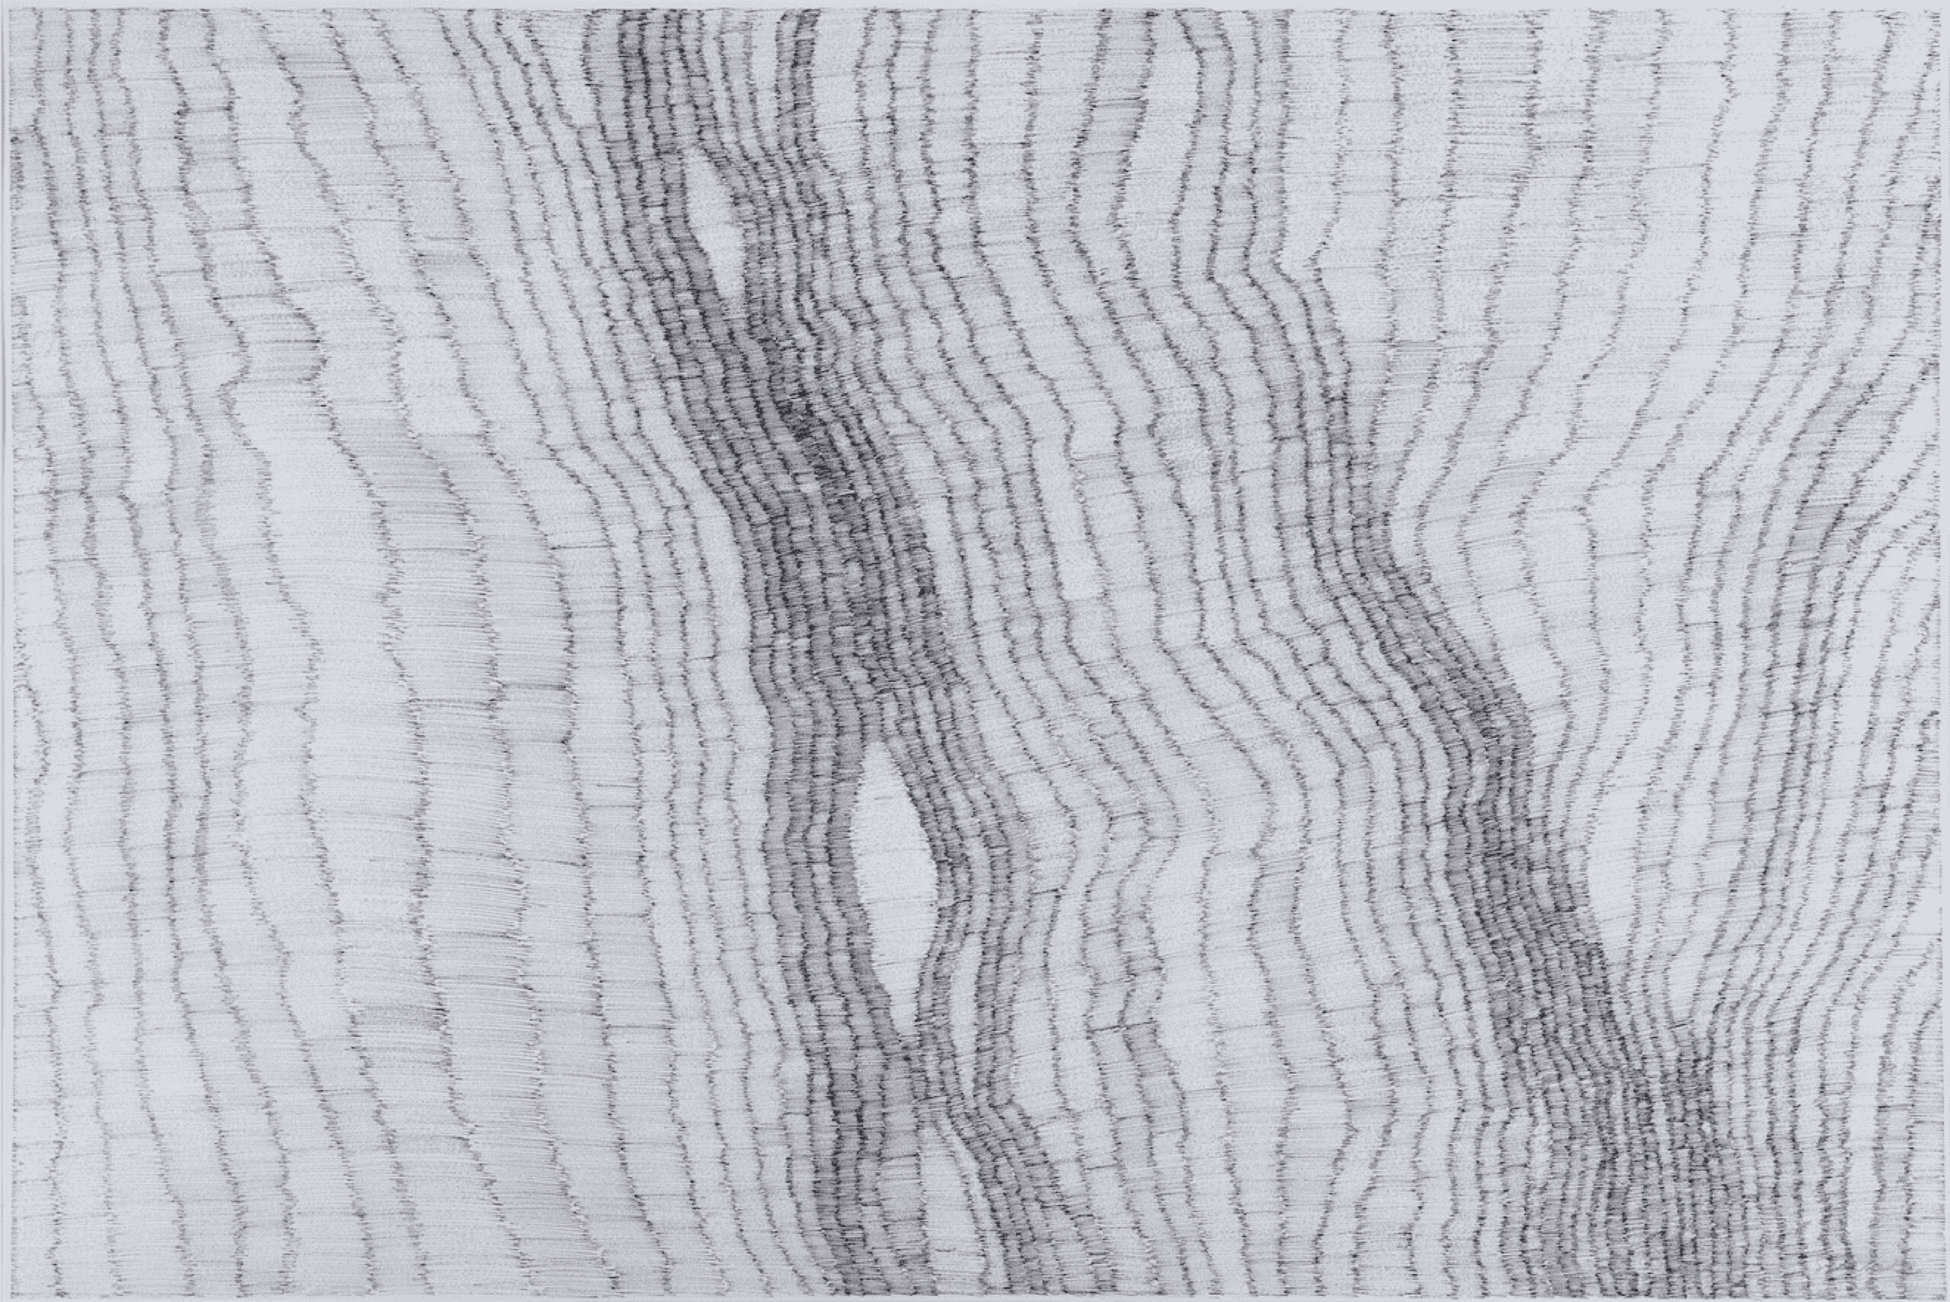 Greta Schödl, Untitled (from Vibrations Se- ries), 63,5 x 93,5 cm, 1975-80, encre de Chine sur papier, Courtesy LABS Contemporary Art